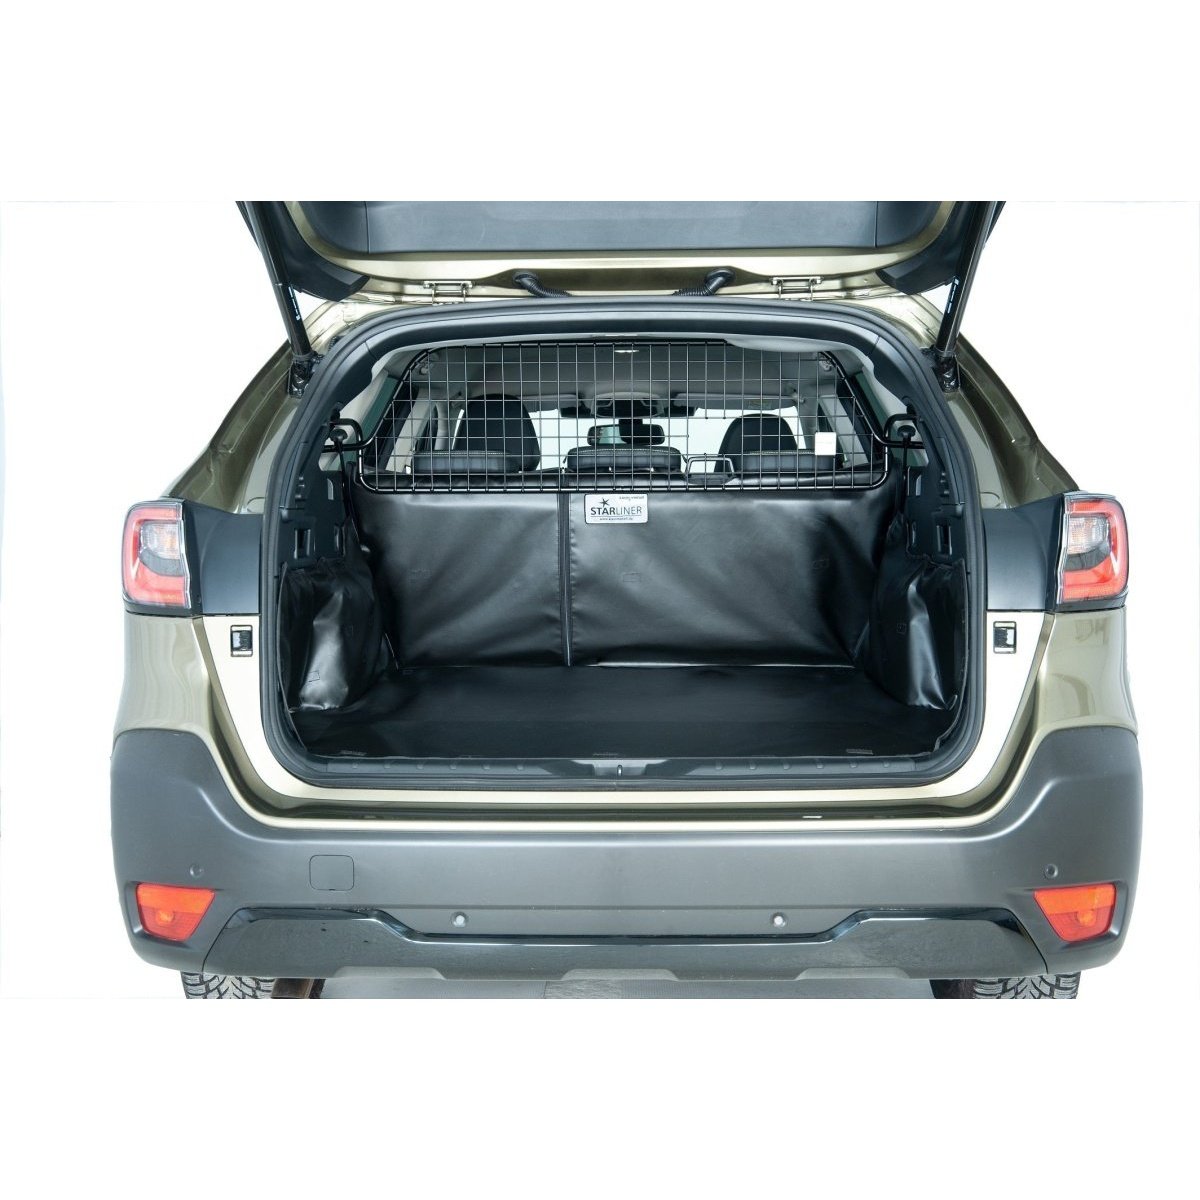 Kleinmetall Starliner trunk liner for VW Tiguan I (deep loading floor, –